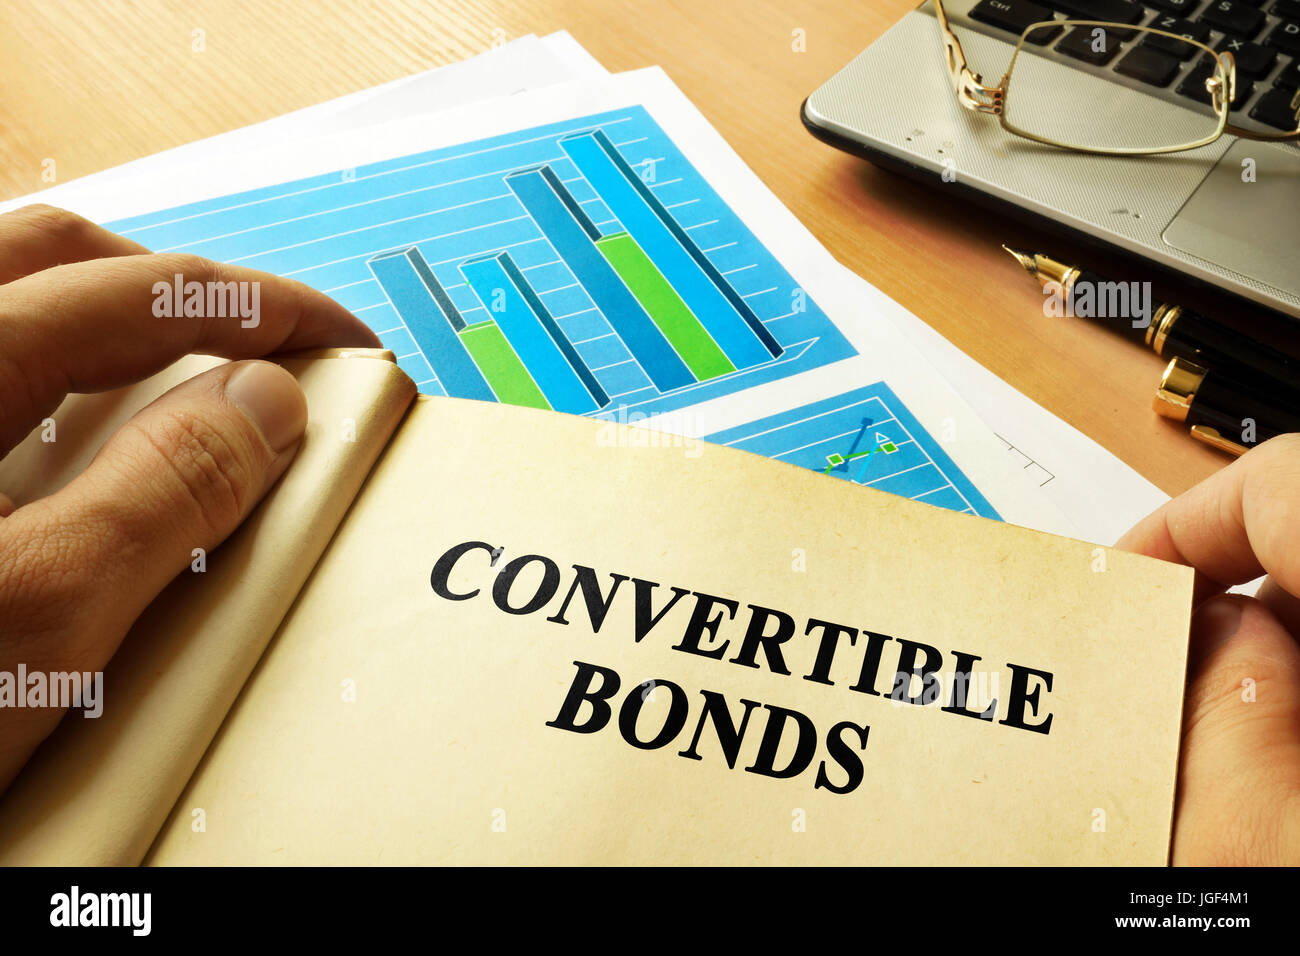 Livre avec la page à propos d'obligations convertibles. Banque D'Images